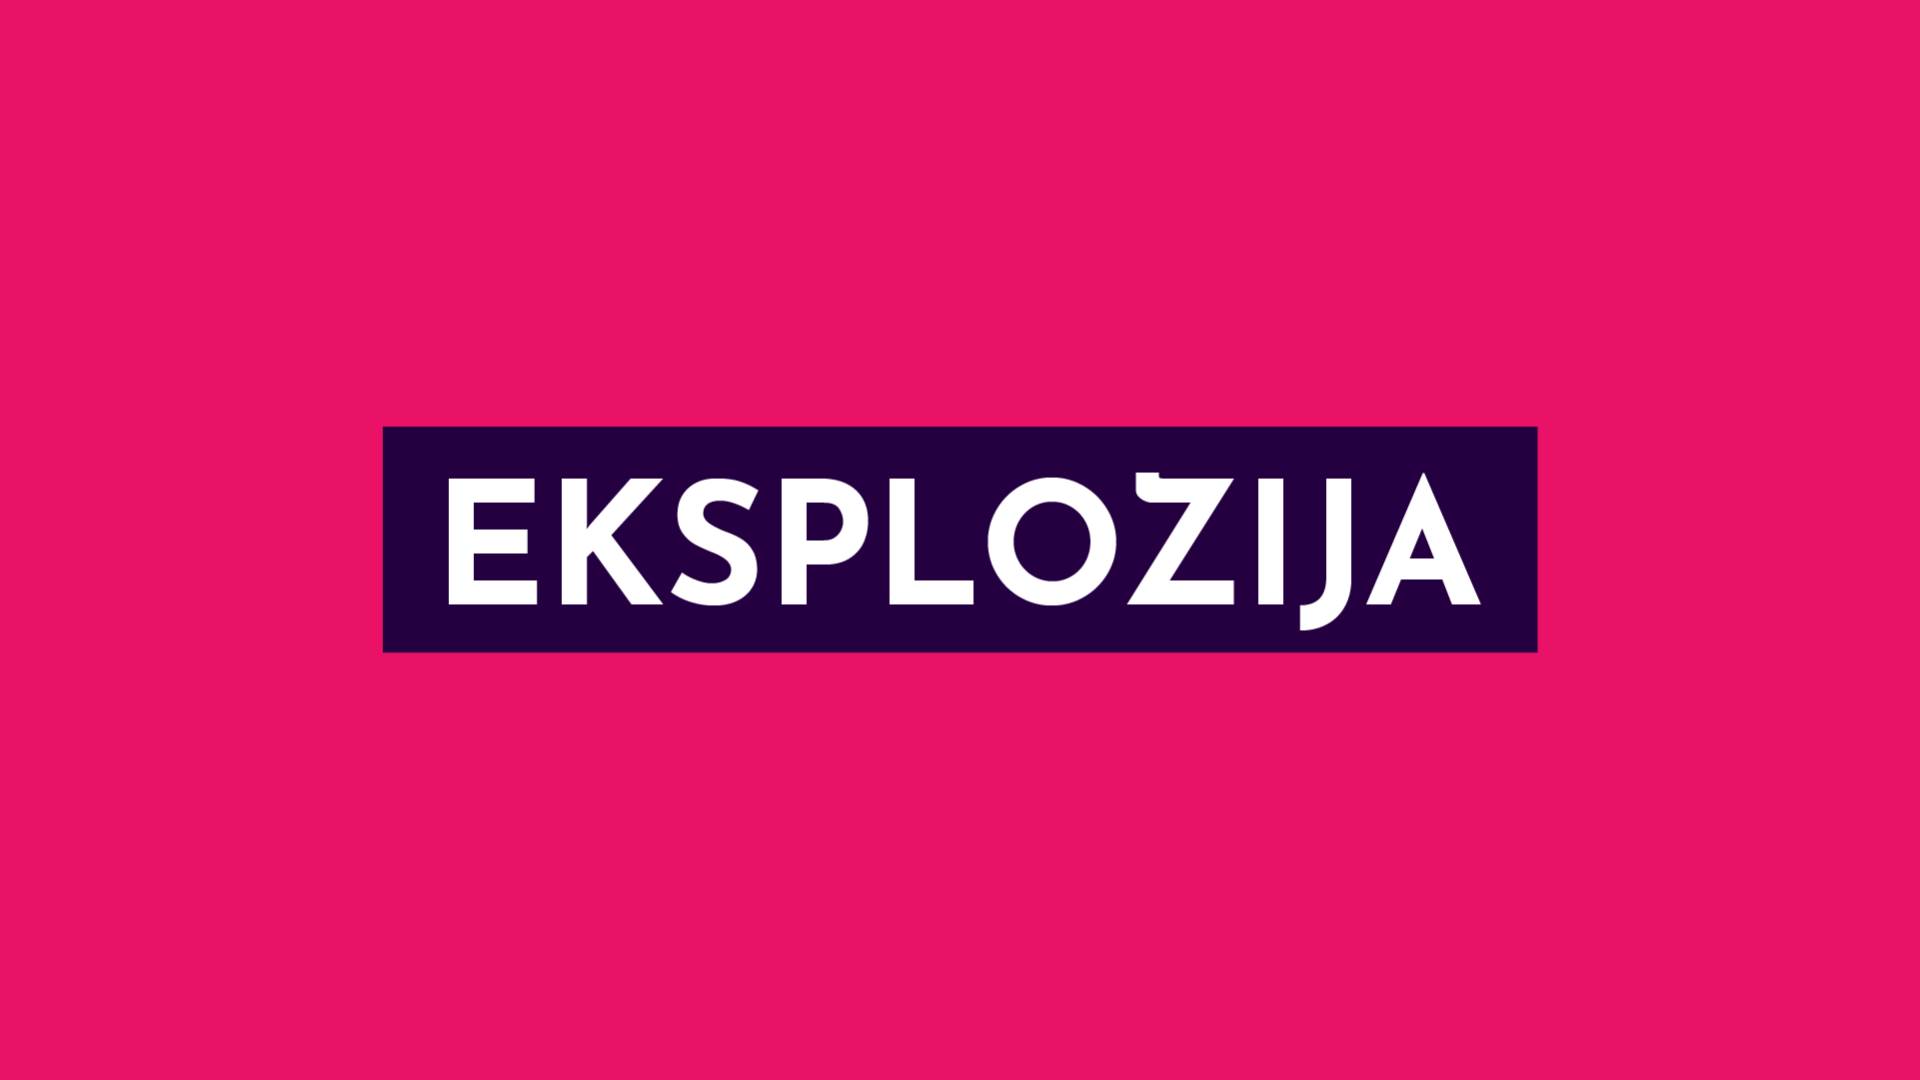  Eksplozija u Poljskoj: Ljudi zatrpani, među njima i djeca - četvoro mrtvih! 